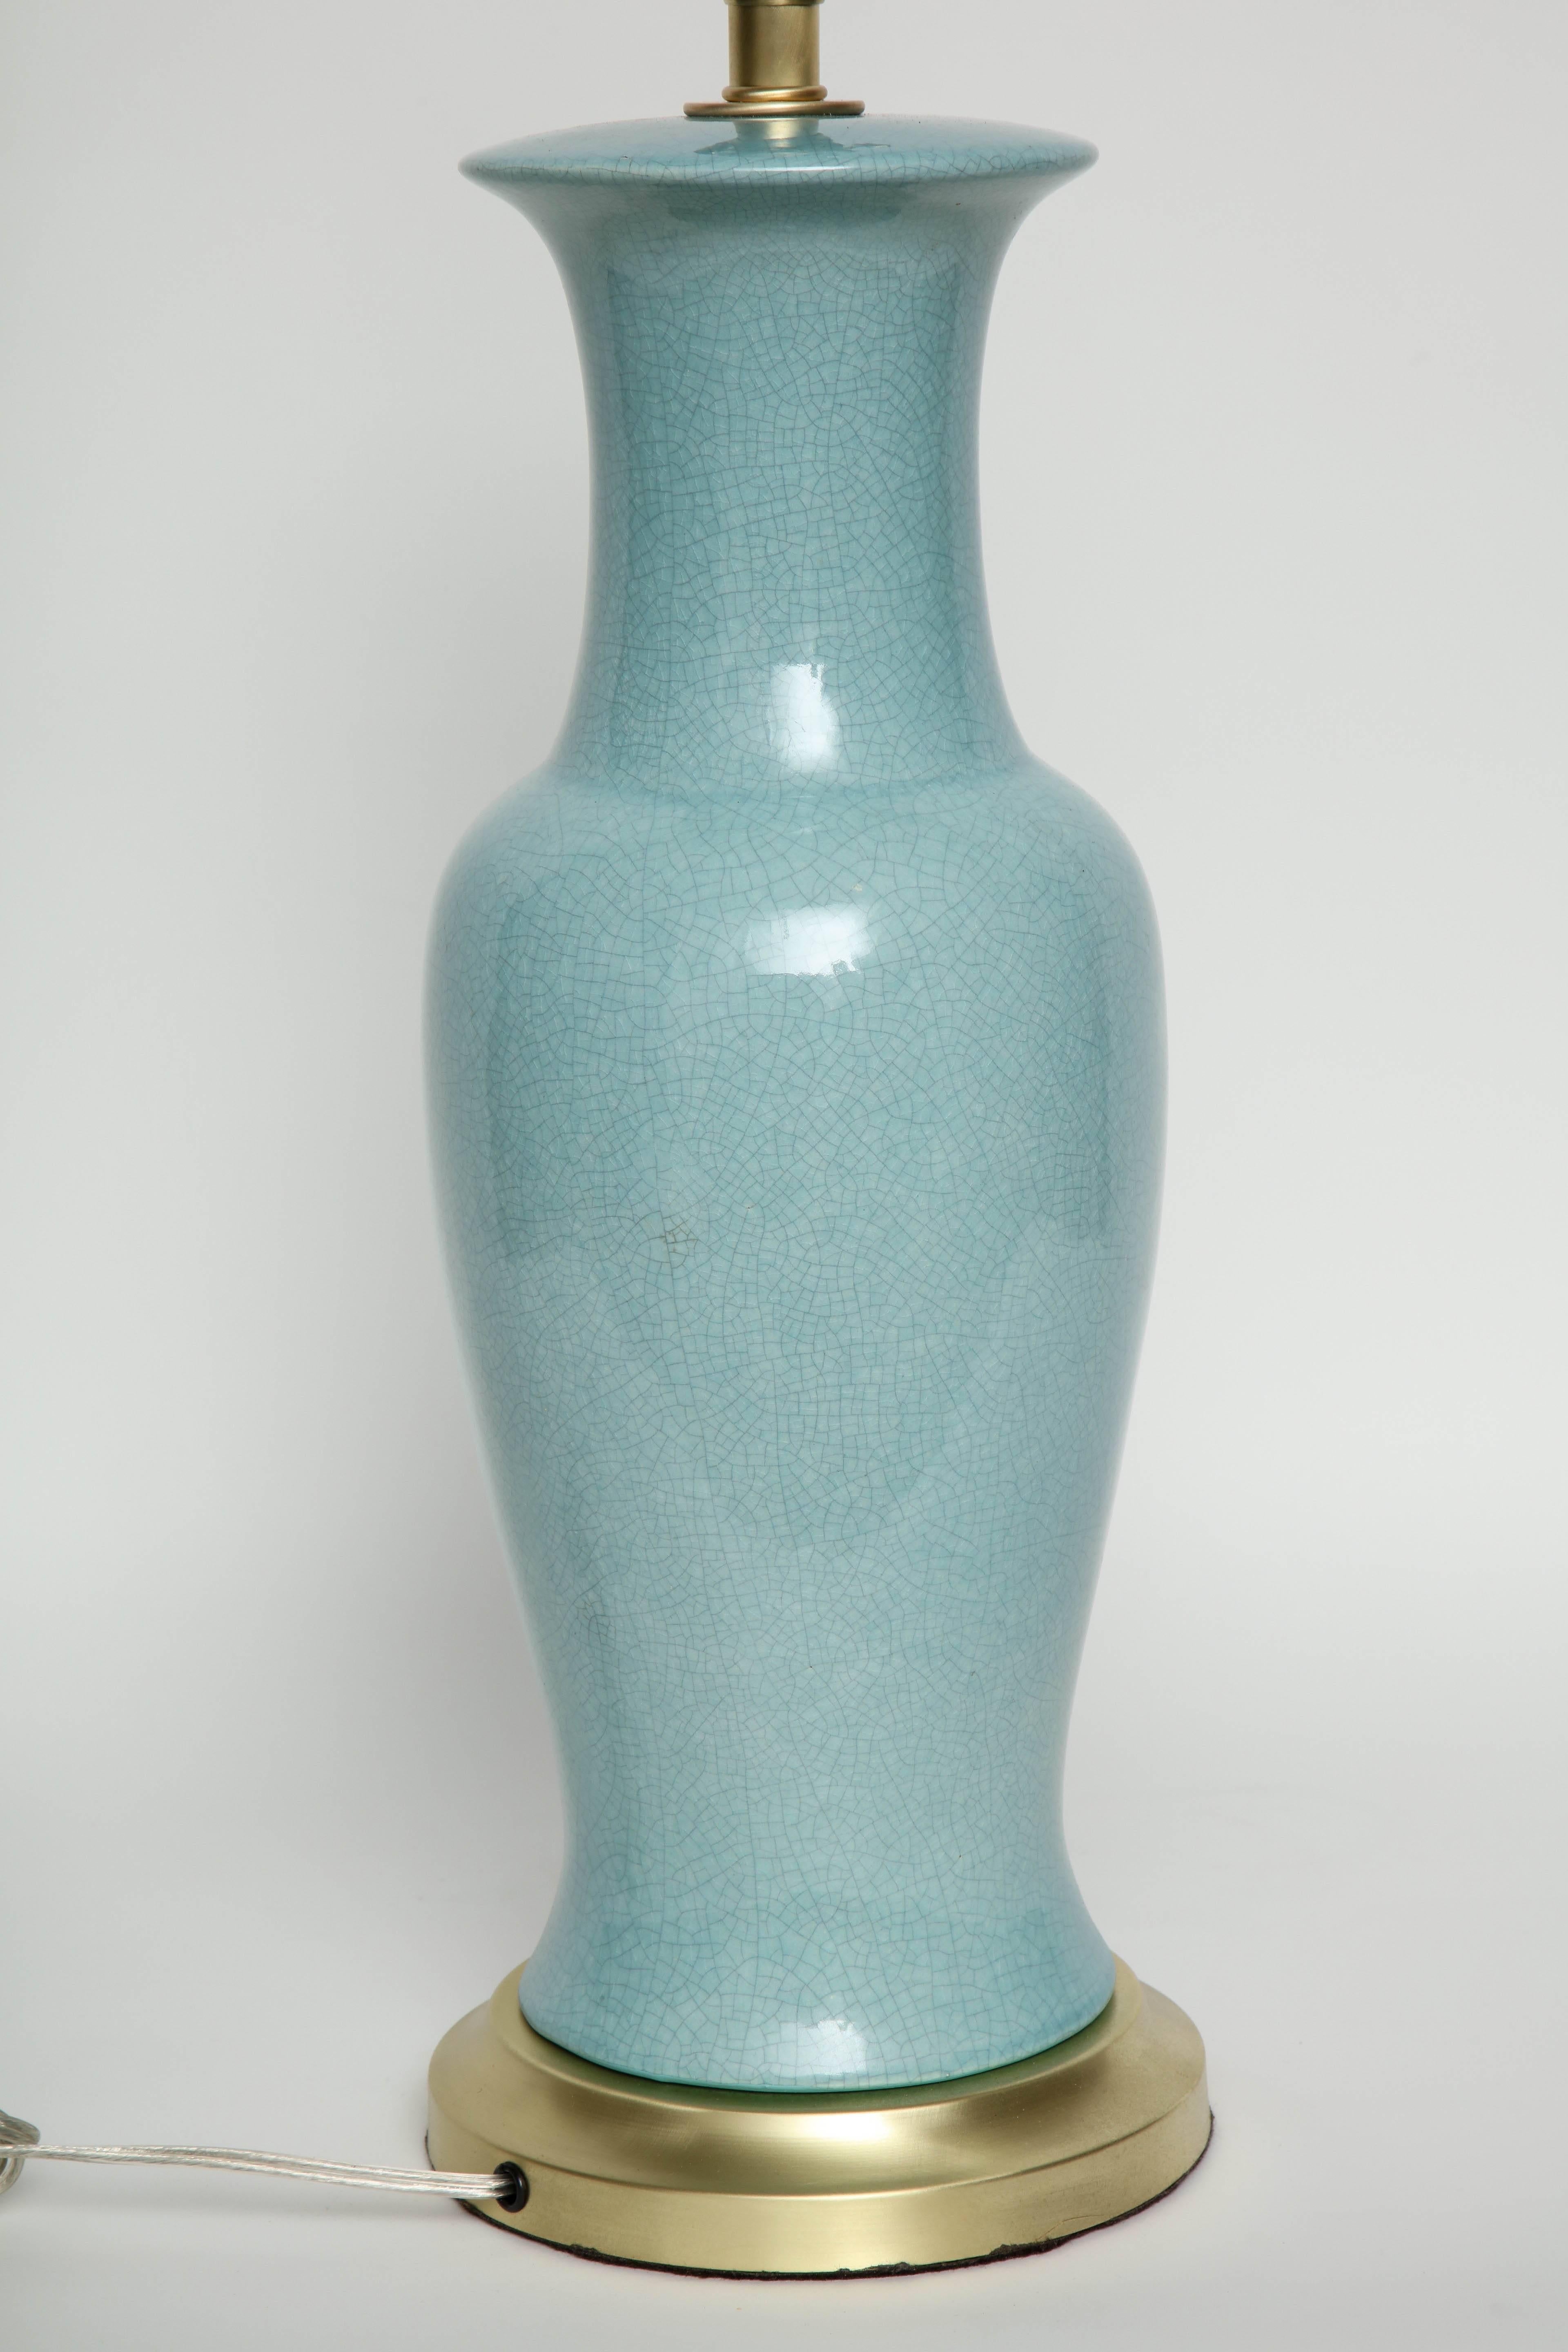 Paul Hanson Robins Egg Blue Porcelain Lamps 1